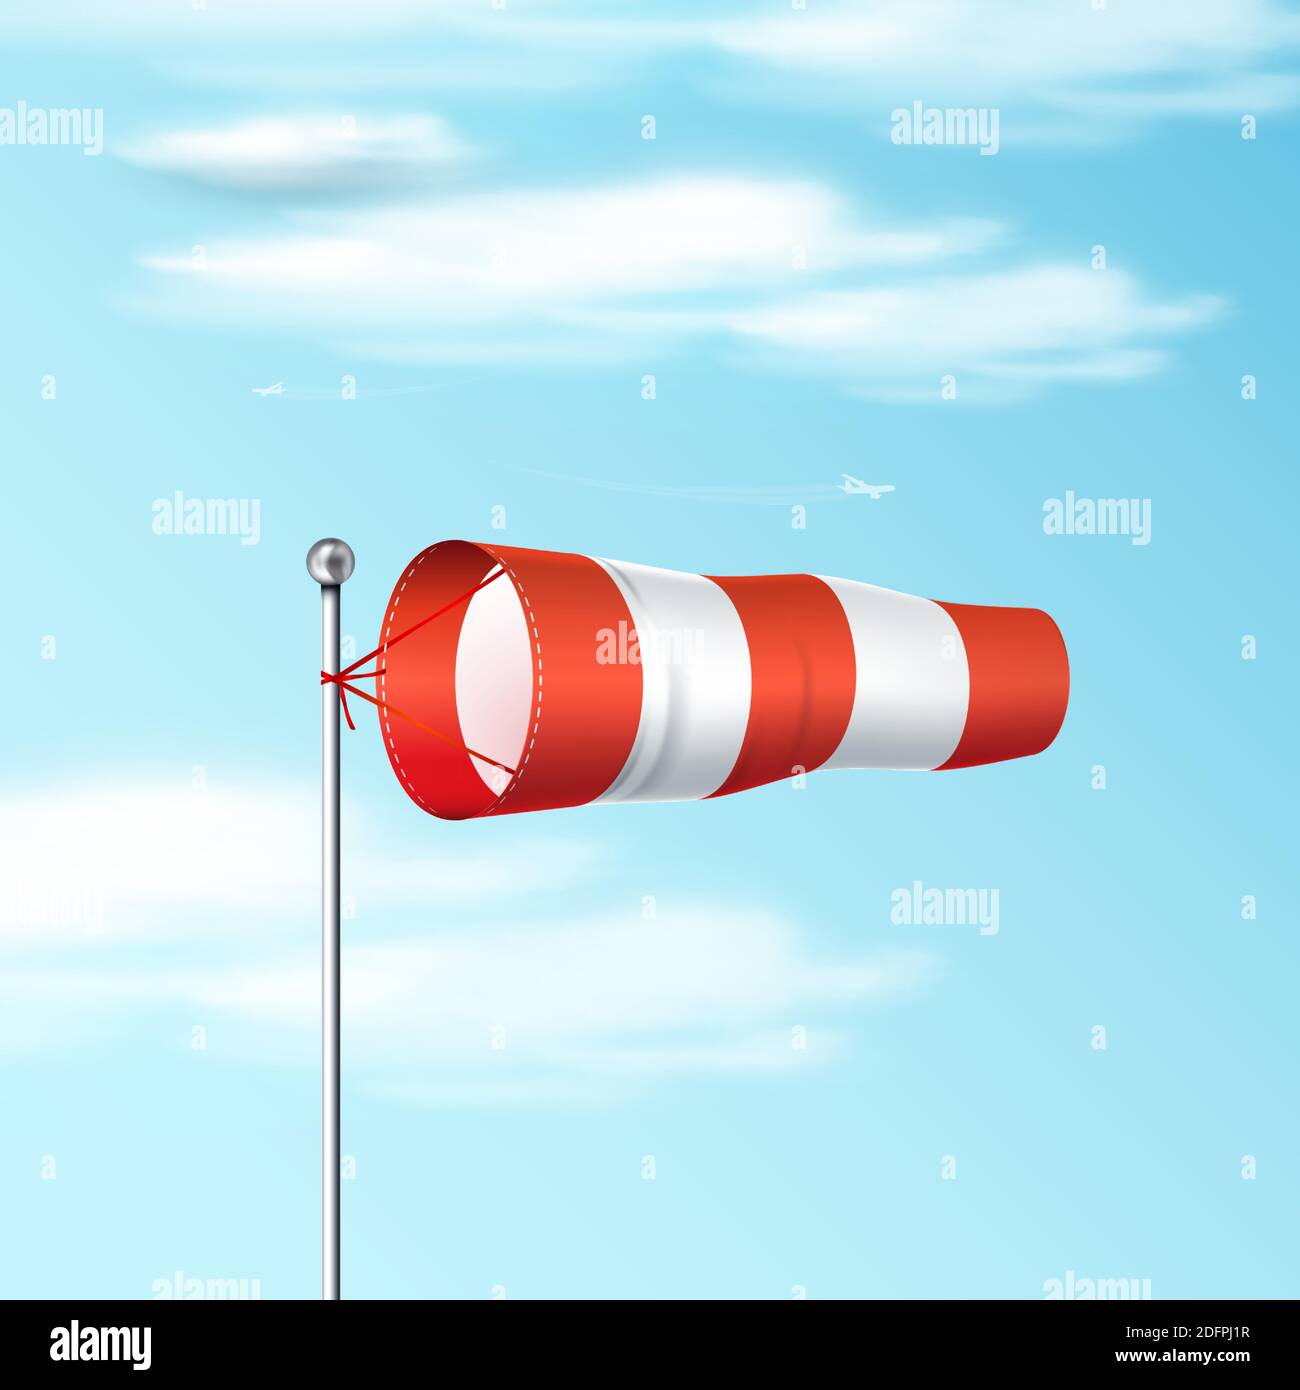 Chaussettes de vent sur le ciel bleu. Drapeau de vent d'aéroport rouge et blanc indiquant la direction et la vitesse du vent. Illustration vectorielle réaliste. Illustration de Vecteur